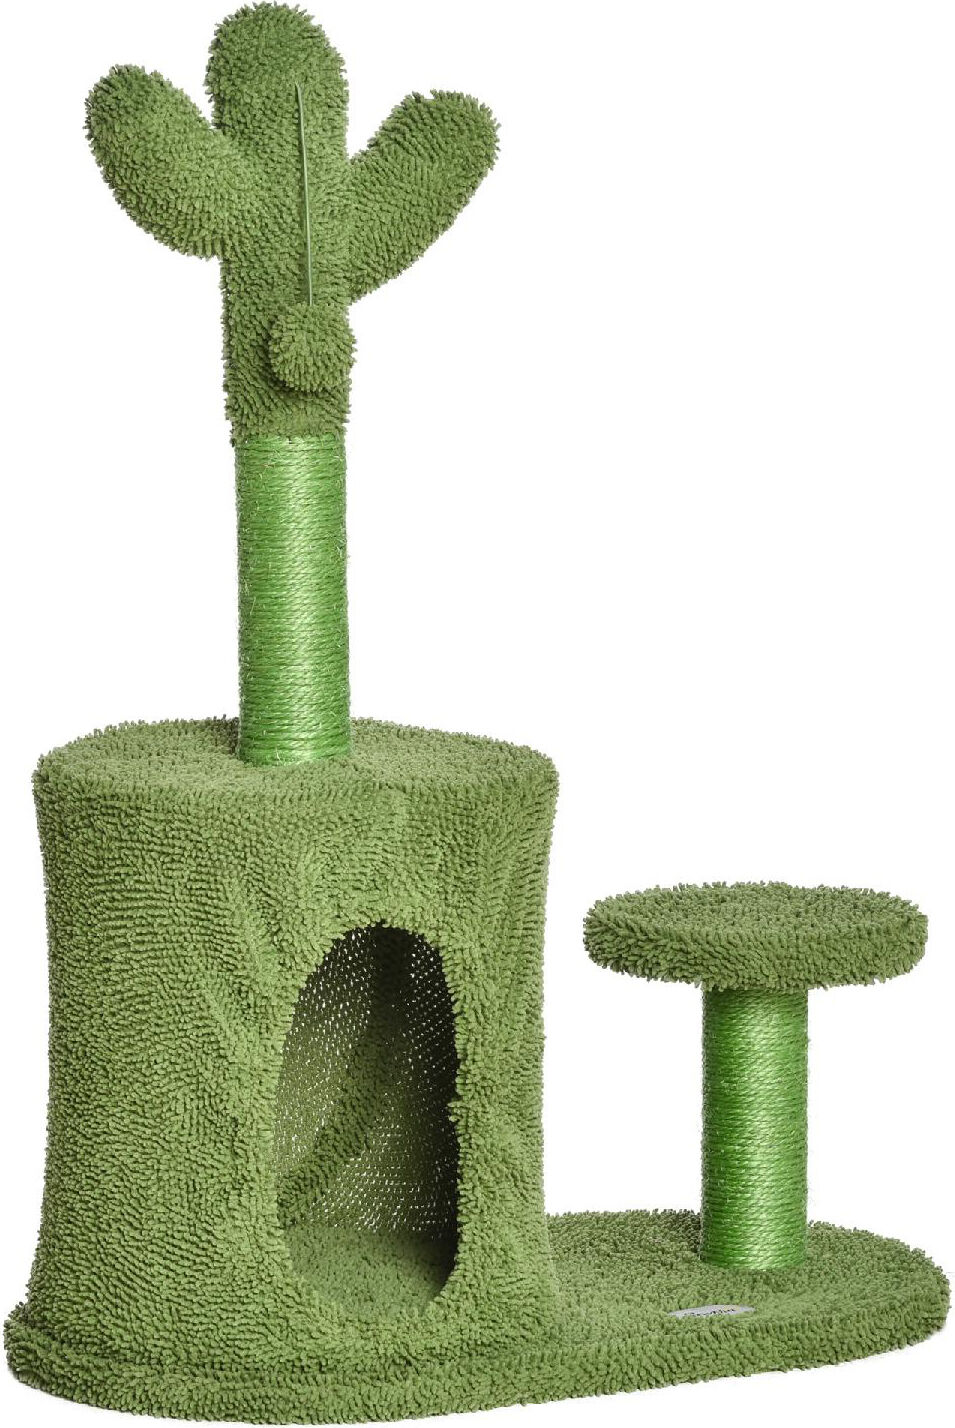 dechome 450 tiragraffi per gatti albero tiragraffi fino 4.5kg a forma di cactus con palline e cuccia 60x35x78cm verde